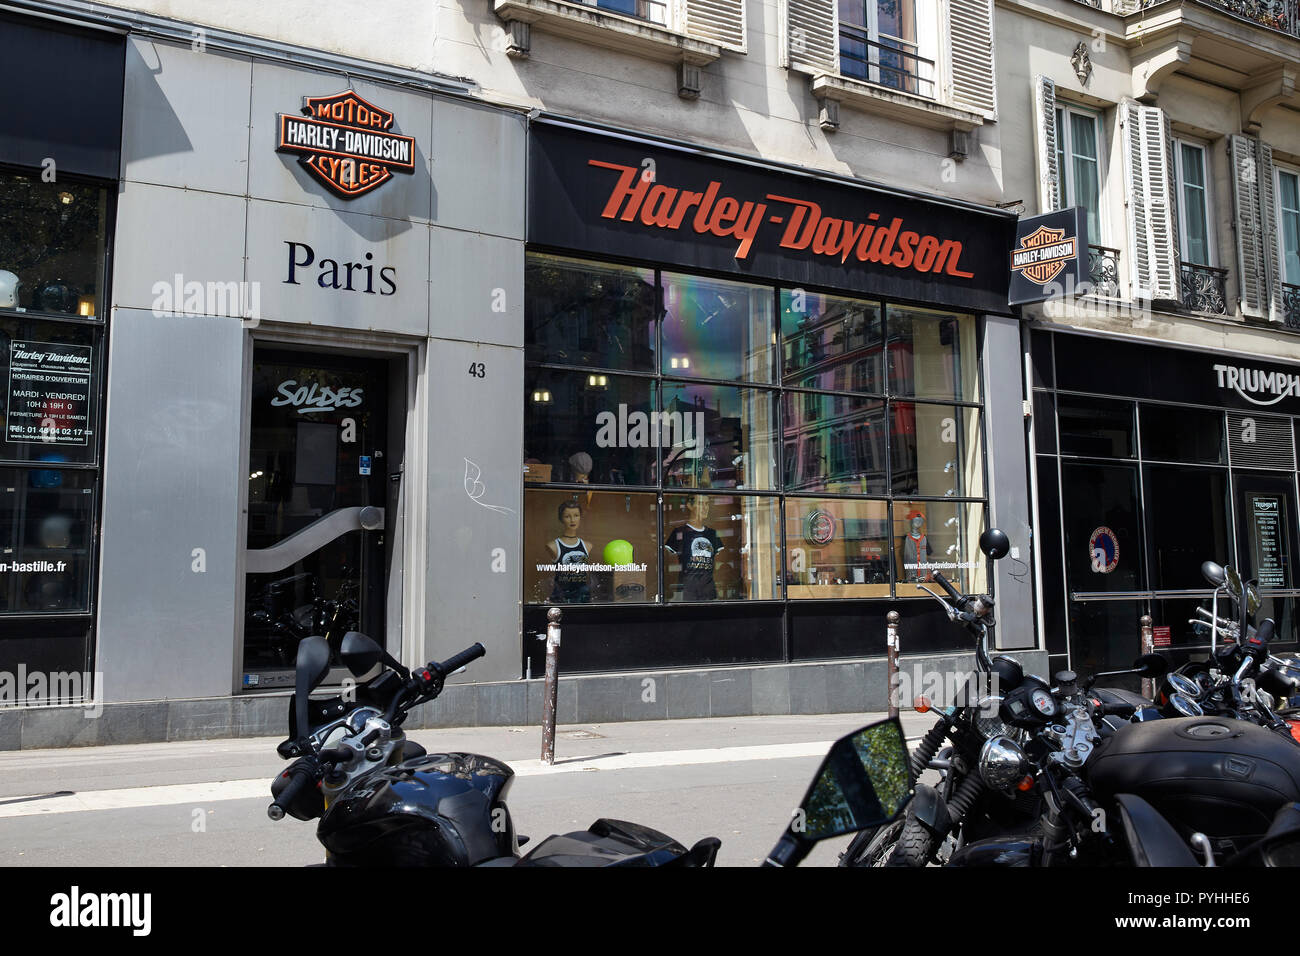 Paris, Ile-de-France, France - The Harley-Davidson Paris-Bastille branch on Boulevard Beaumarchais in the 3rd arrondissement. Stock Photo